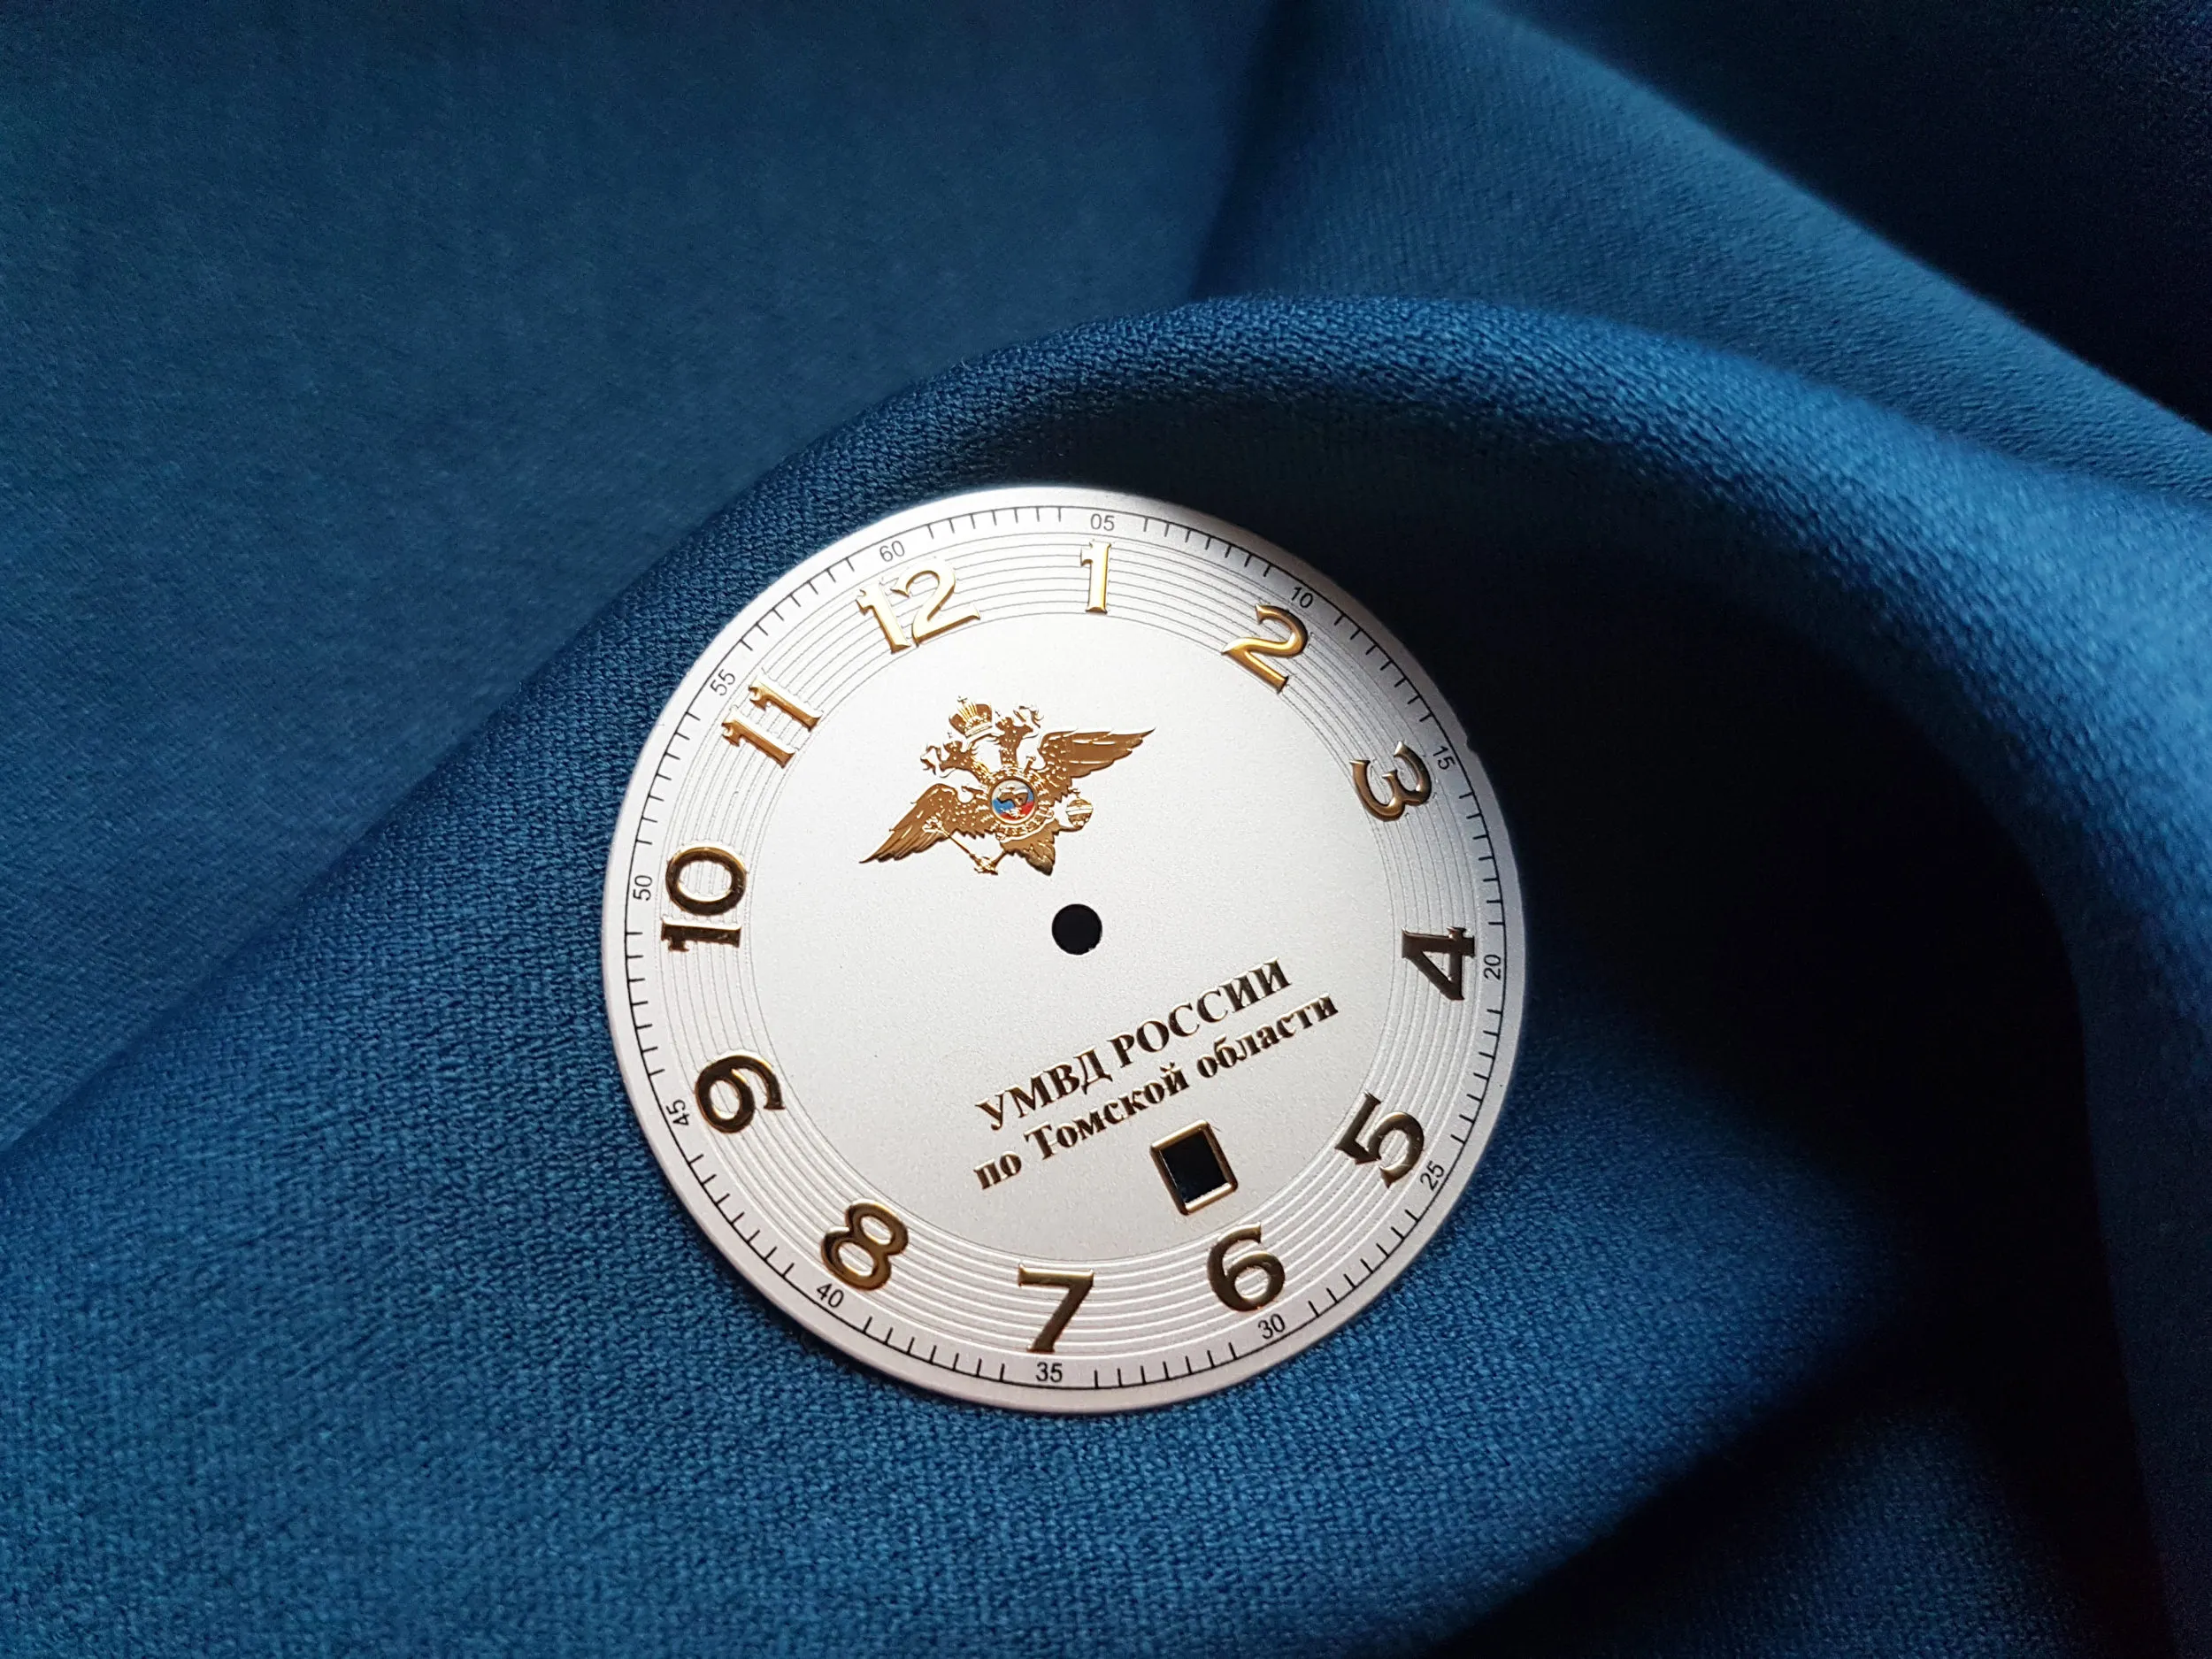 Логотипы наручных часов. Часы наручные логотип фирм. Наручные часы с логотипом компании. Часы с логотипом компании. Корпоративные наручные часы с логотипом.